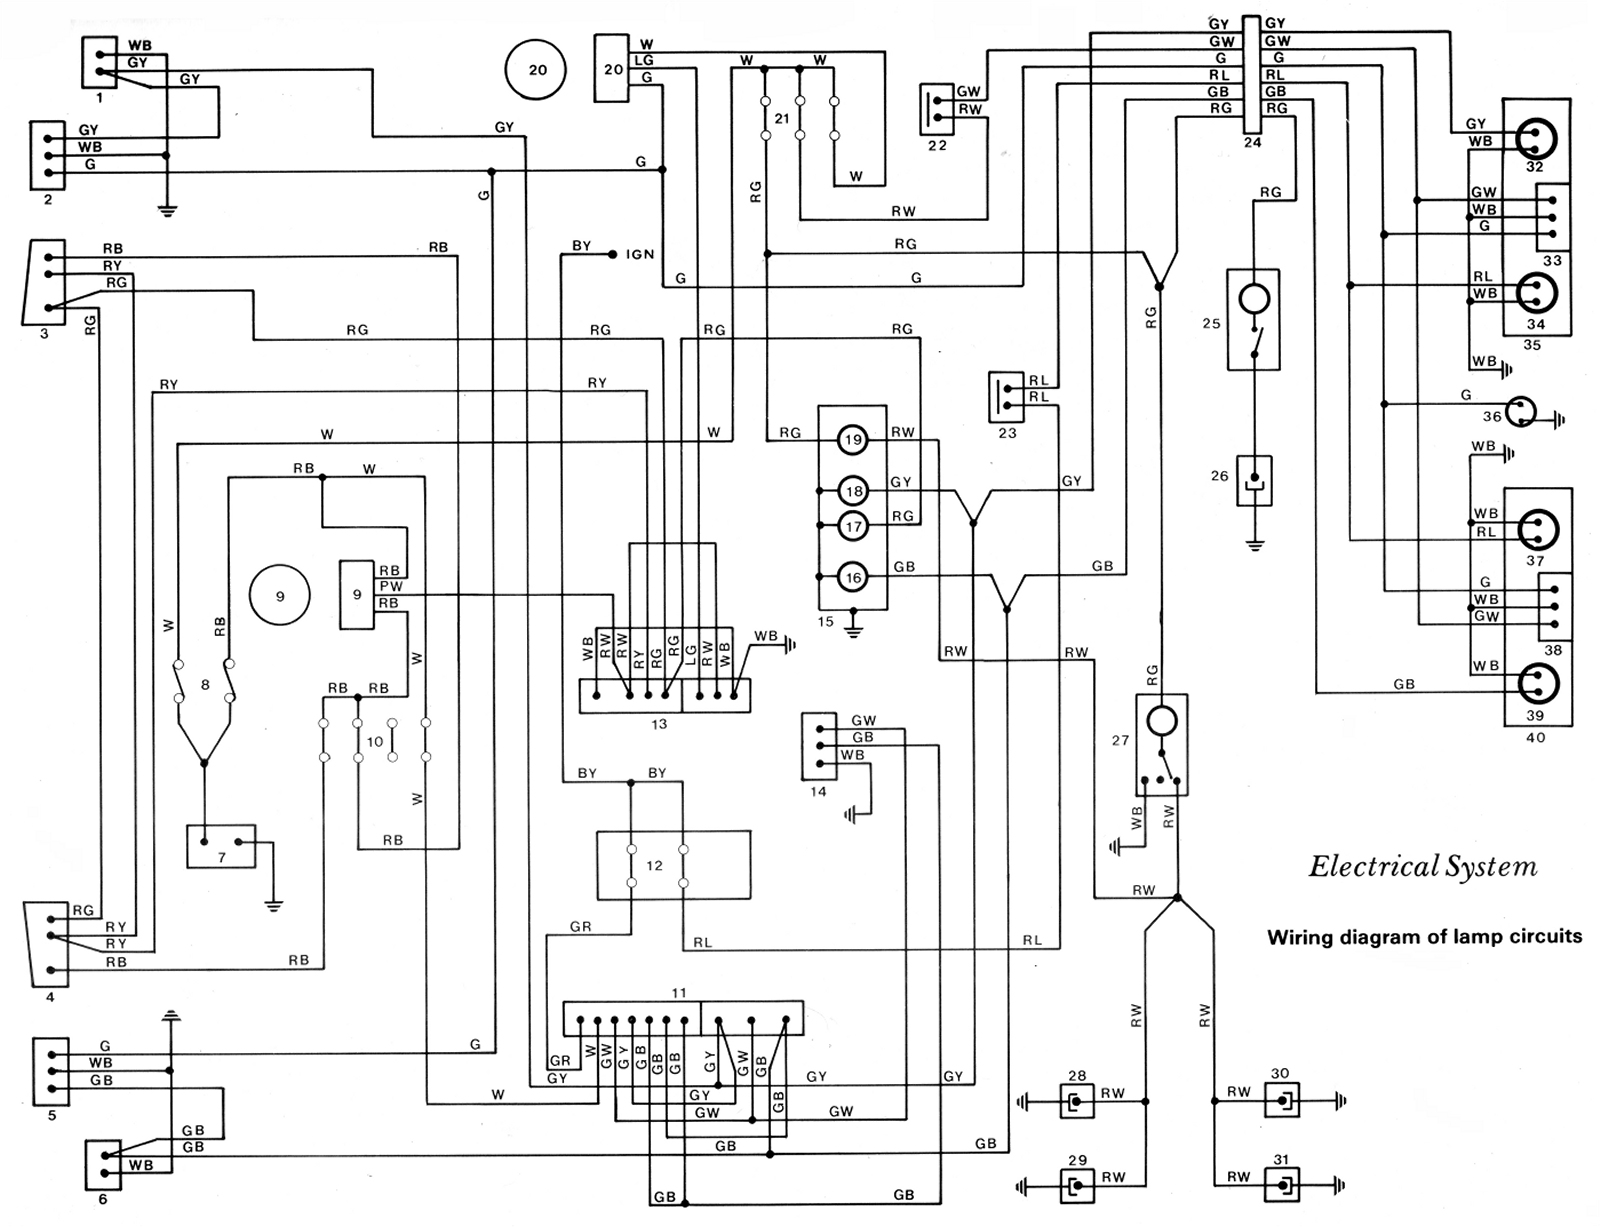 KE70 Wiring Diagram - Lamp Circuit Schematic.jpg